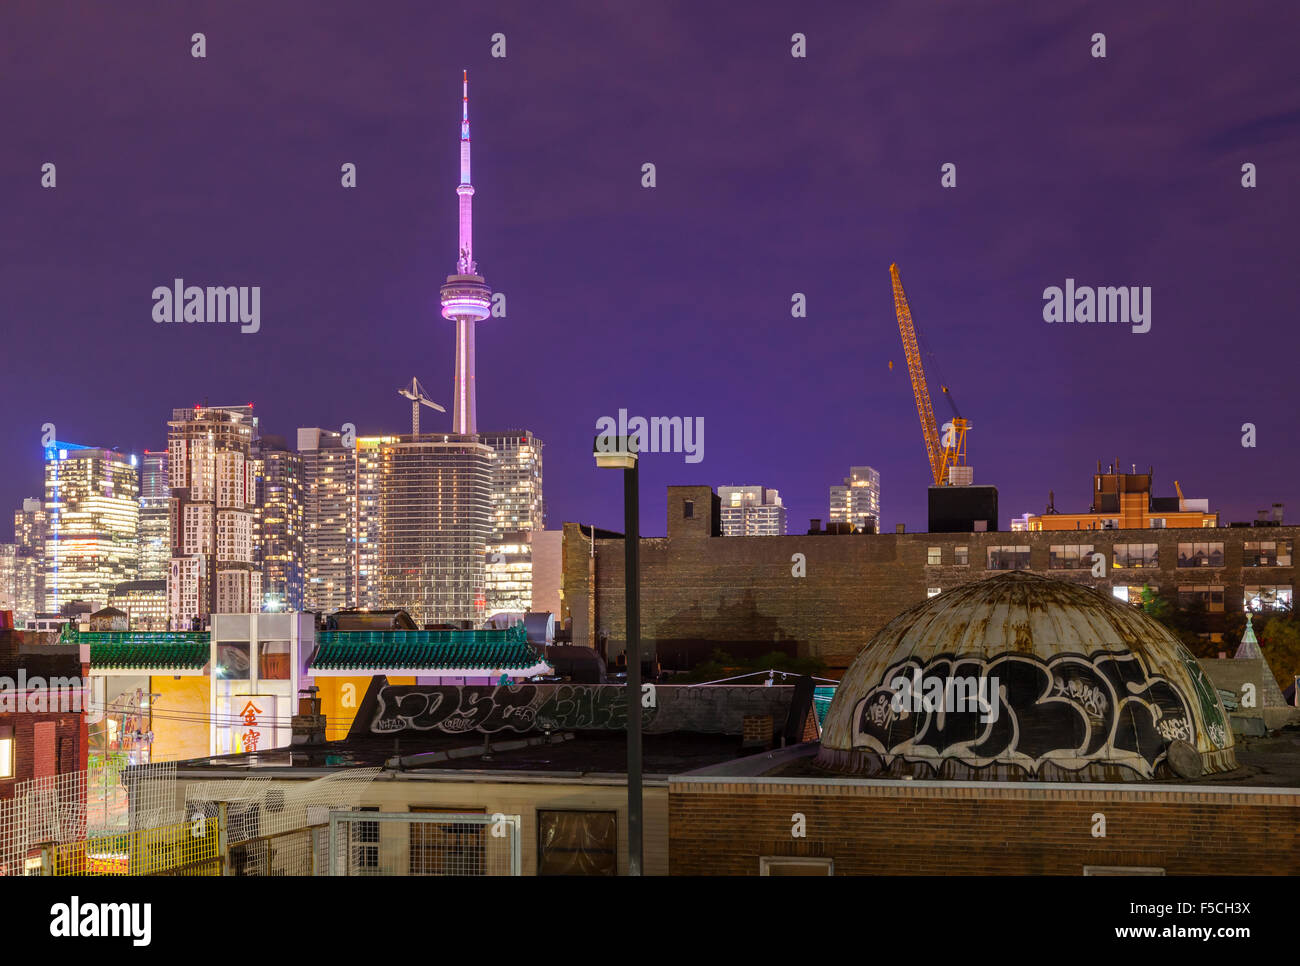 El centro de Toronto skyline visto desde una azotea en Kensington Market cerca de Spadina Avenue. Toronto, Ontario, Canadá. Foto de stock